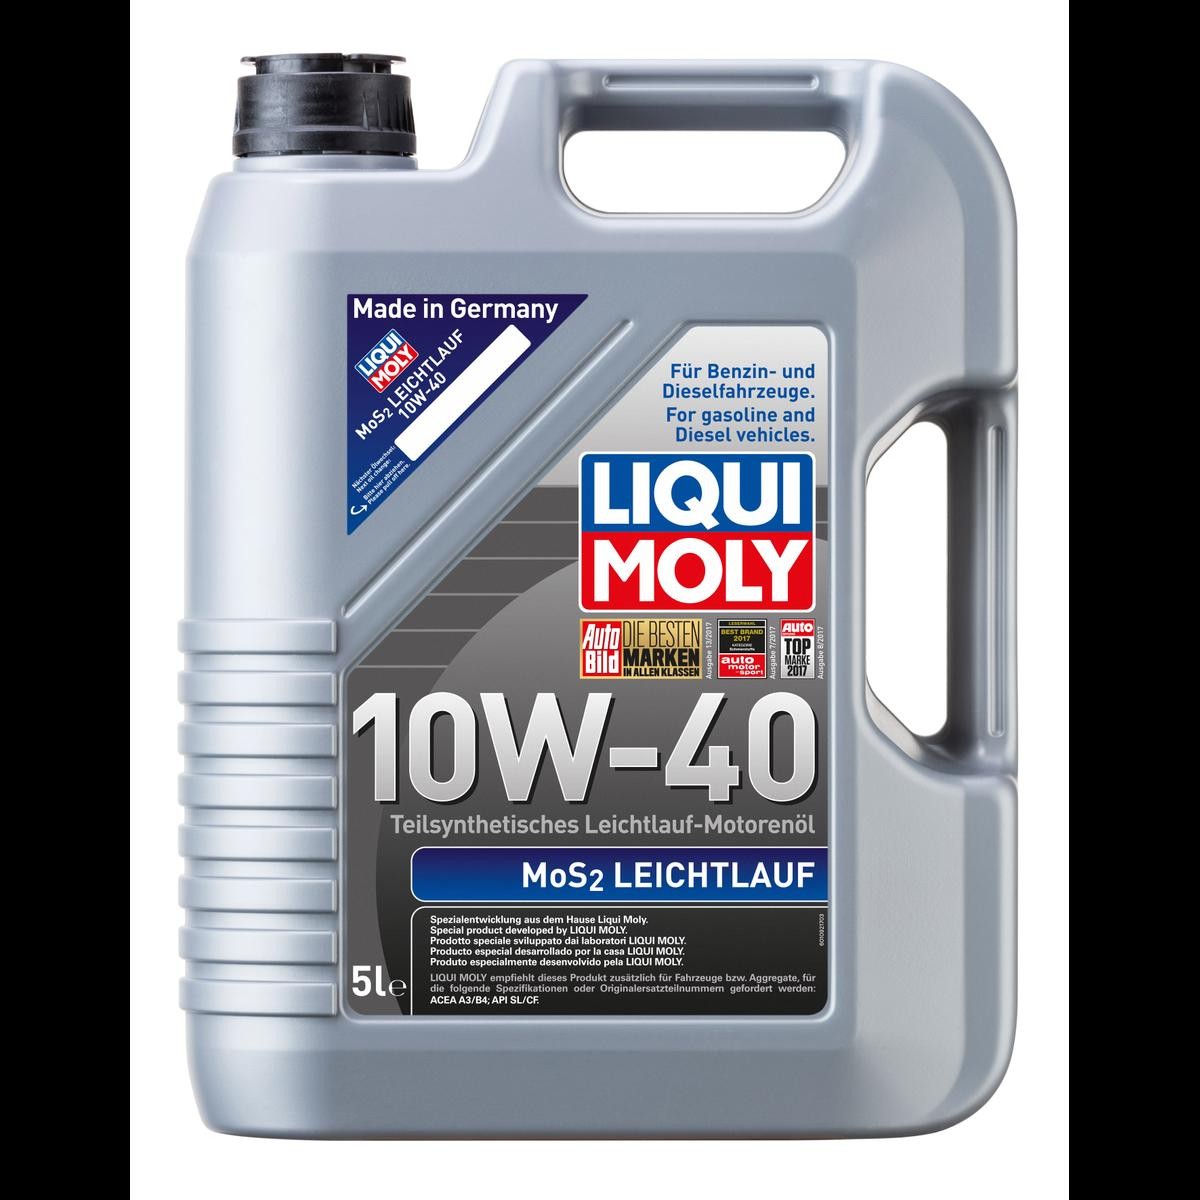 LIQUI MOLY 1092 PEUGEOT PKW Motoröl 10W-40, 5l, Teilsynthetiköl